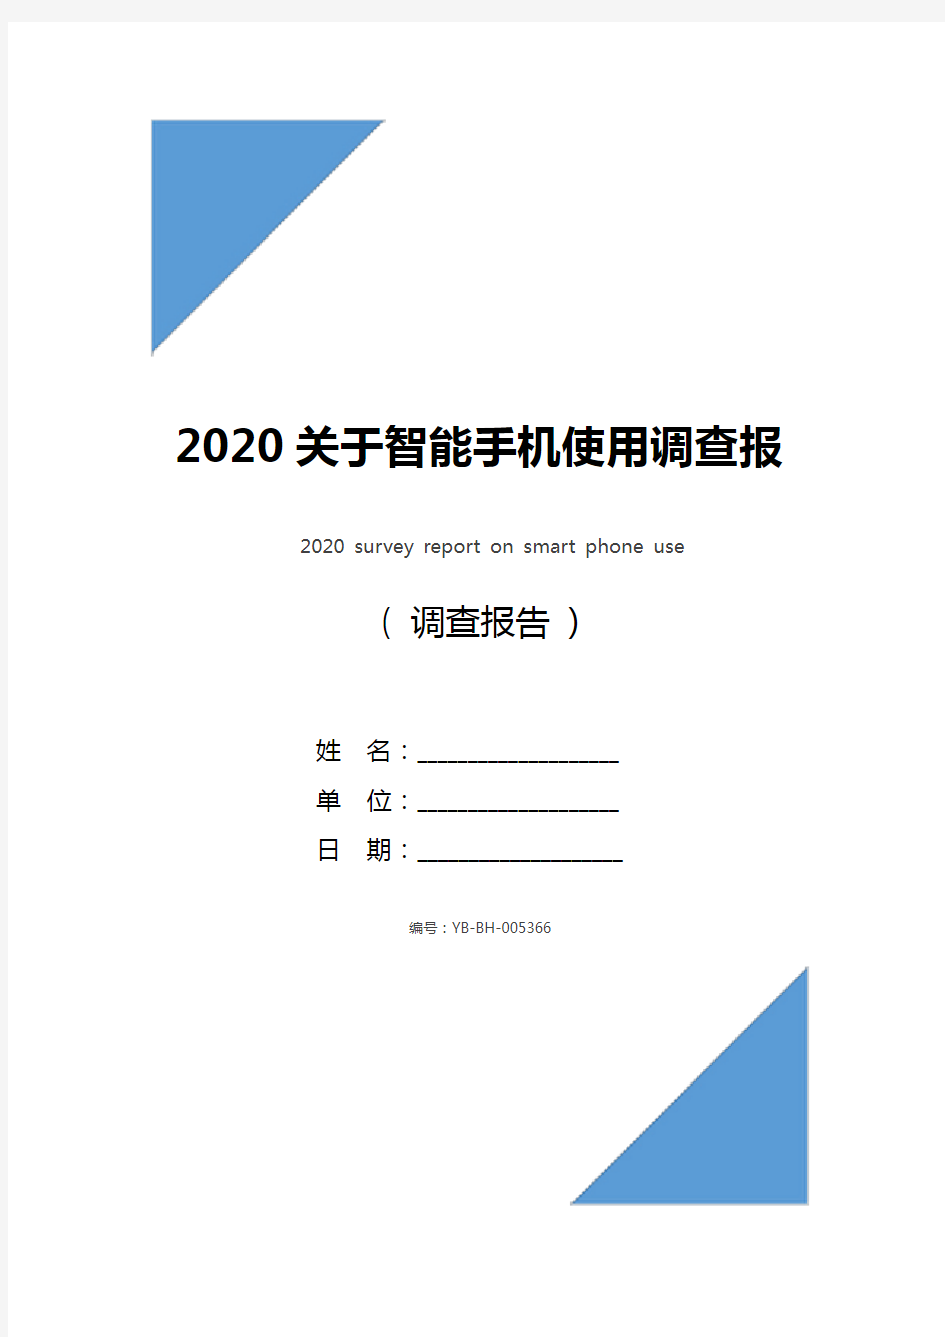 2020关于智能手机使用调查报告_1